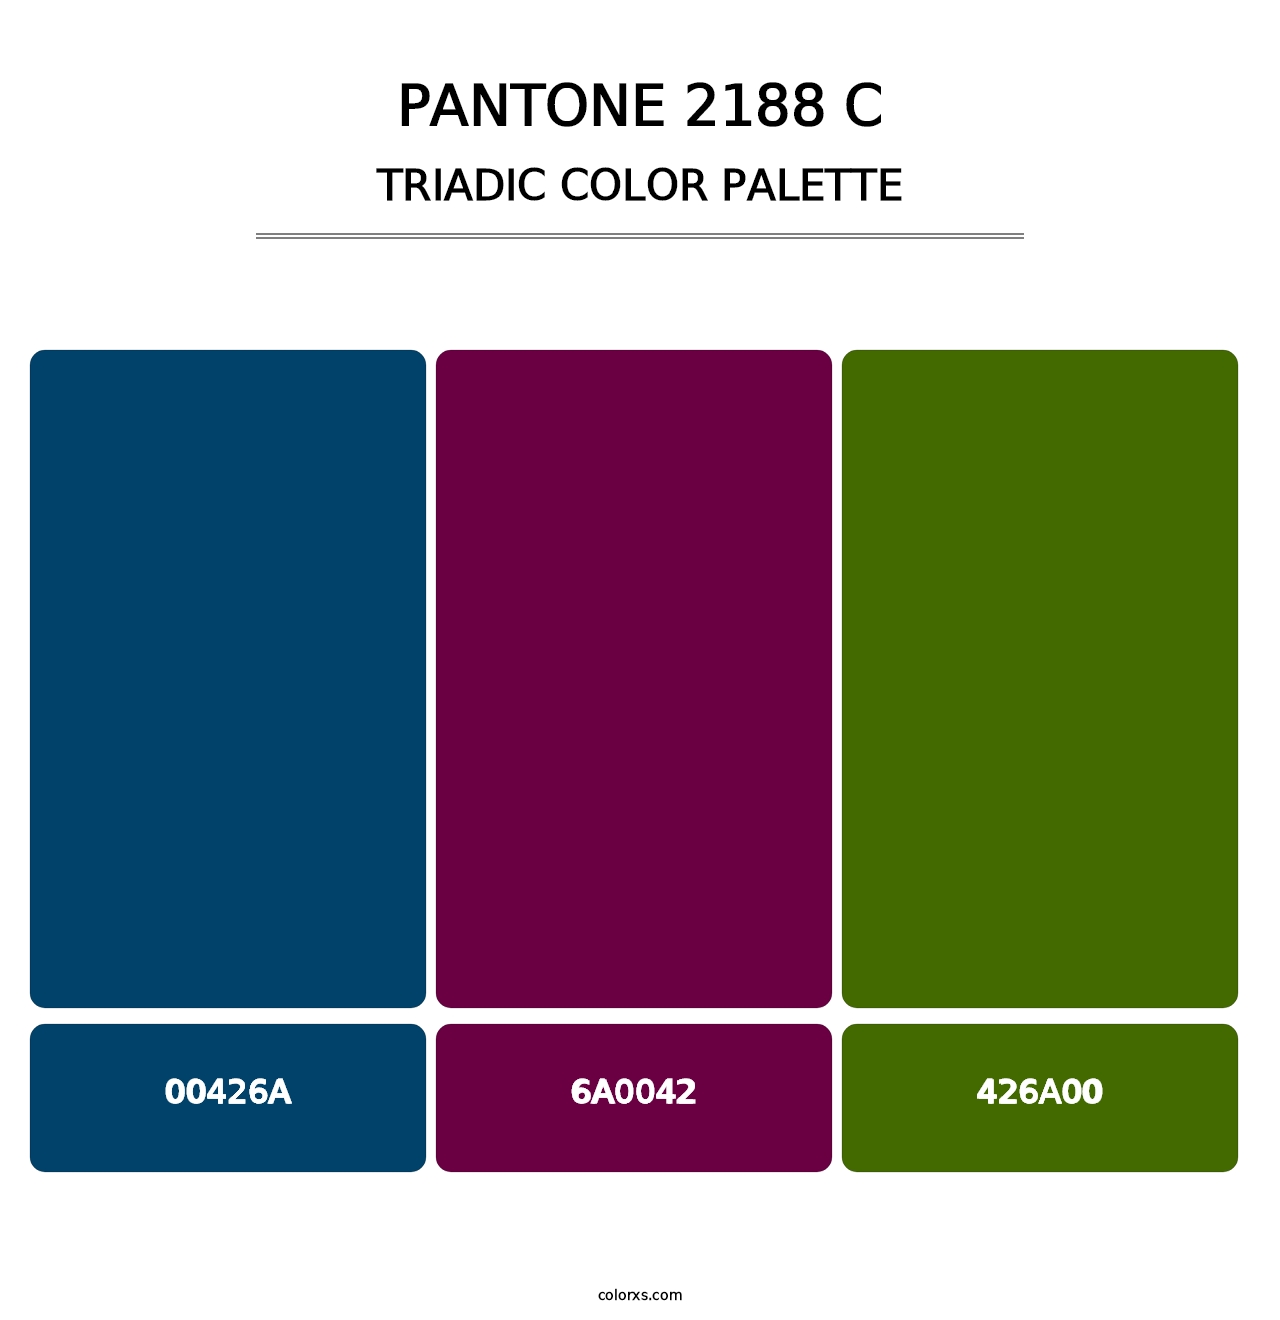 PANTONE 2188 C - Triadic Color Palette